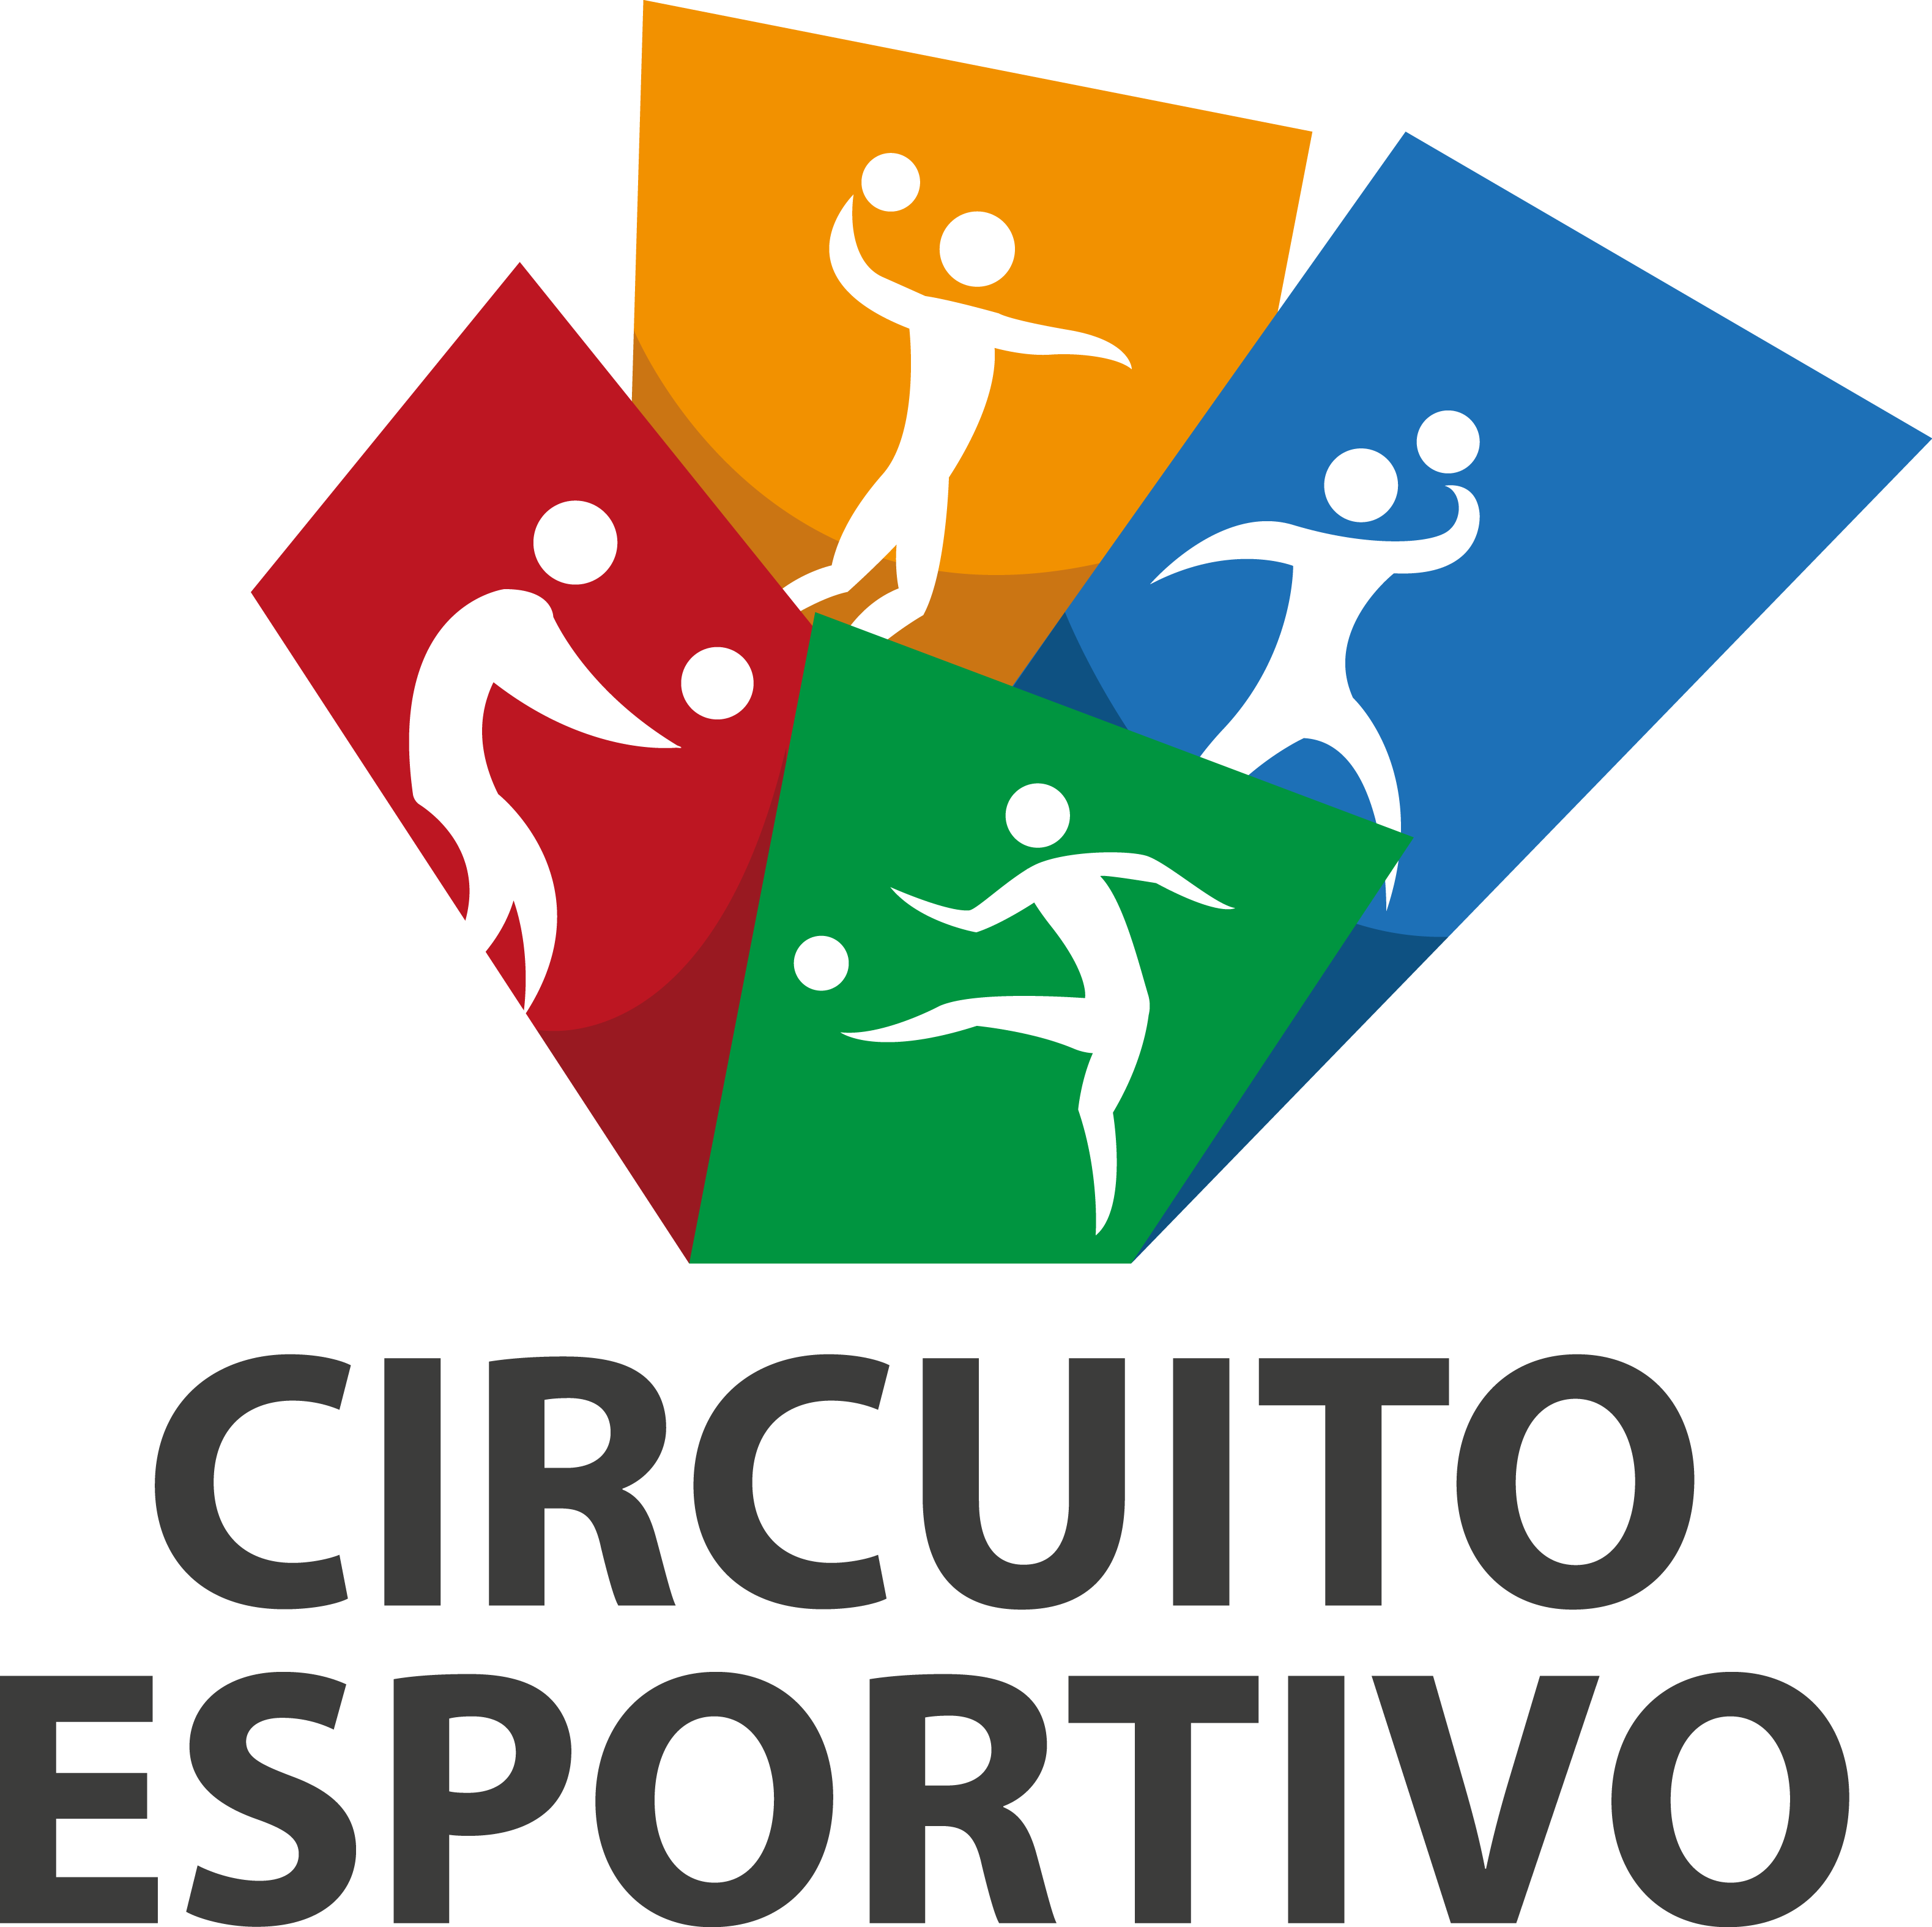 Com 4 modalidades, São Paulo Jogos de E-Sports começa em abril